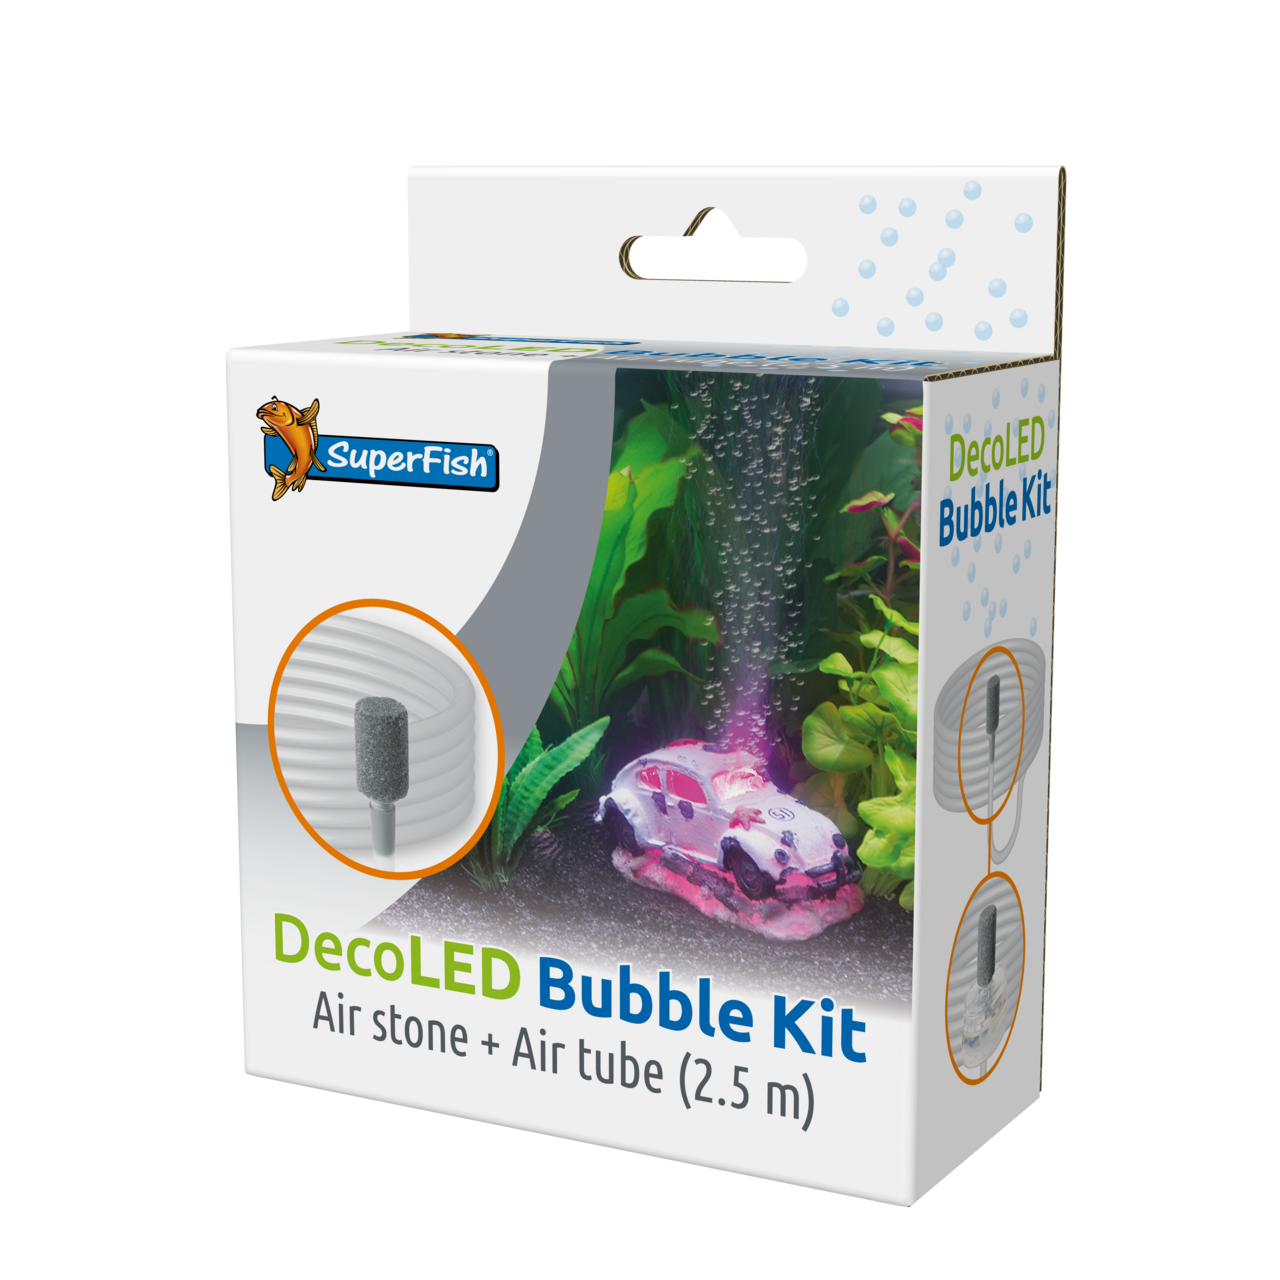 Deco Led Bubble Kit